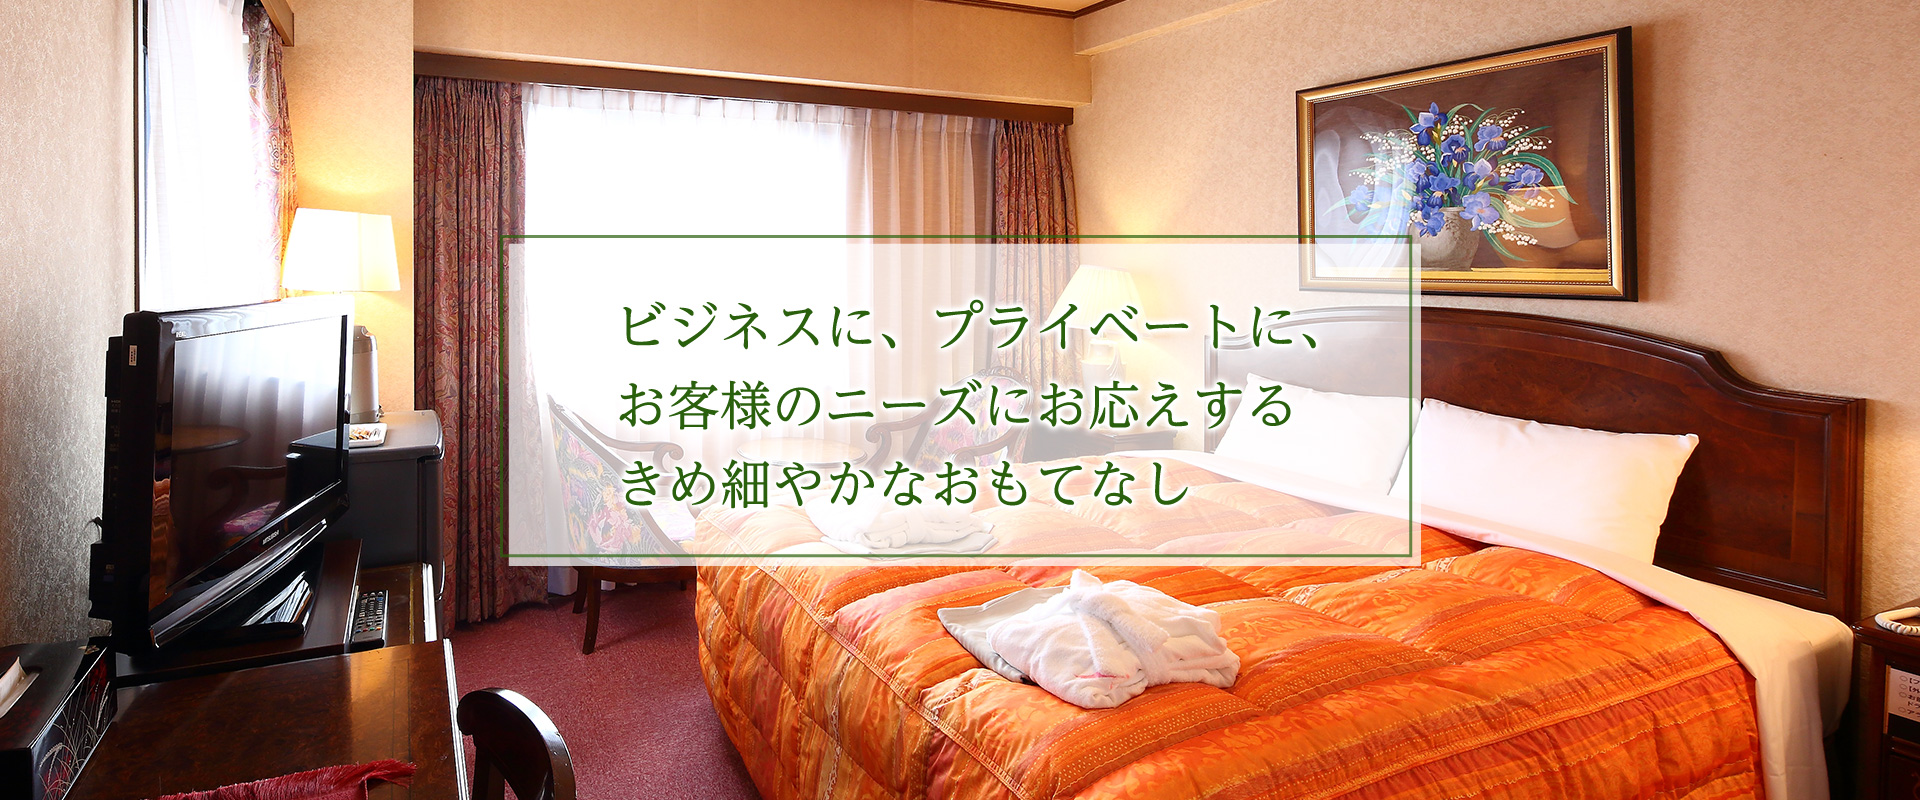 ホテル パレスイン豊田 トヨタ自動車本社に近く 豊田スタジアムへも便利な 愛知県豊田市のビジネスホテルです